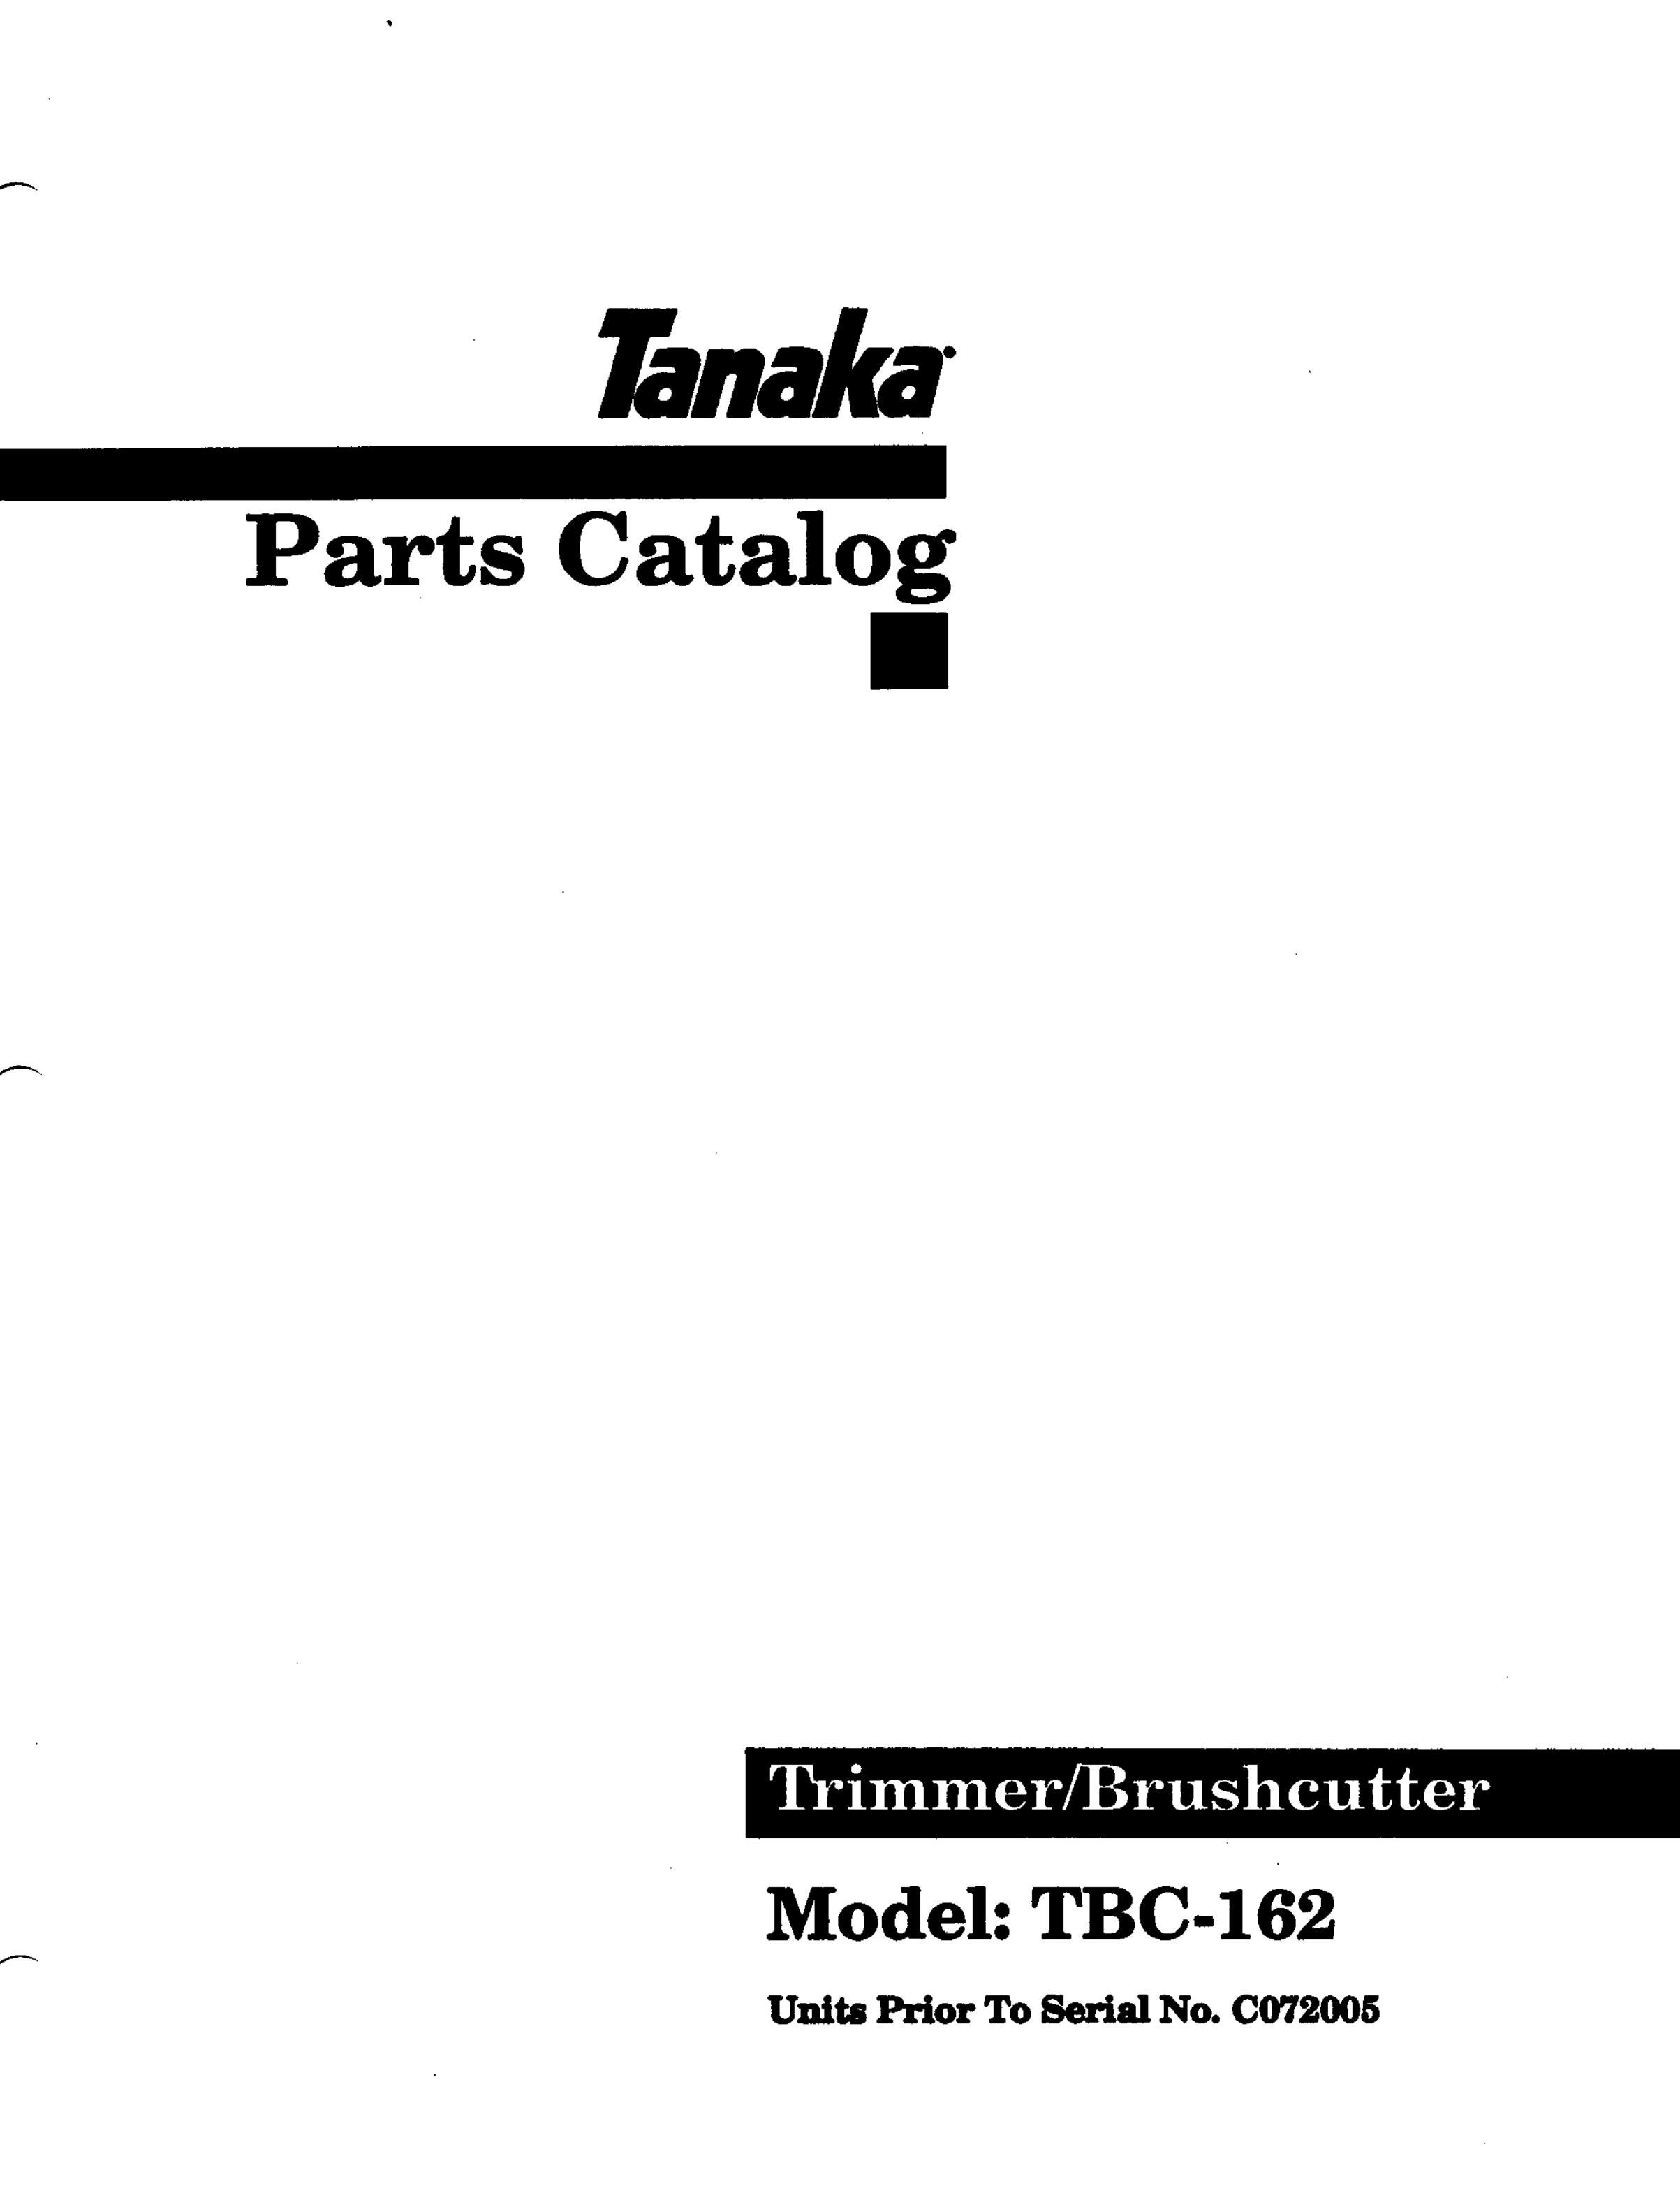 Tanaka TBC-162 Brush Cutter User Manual